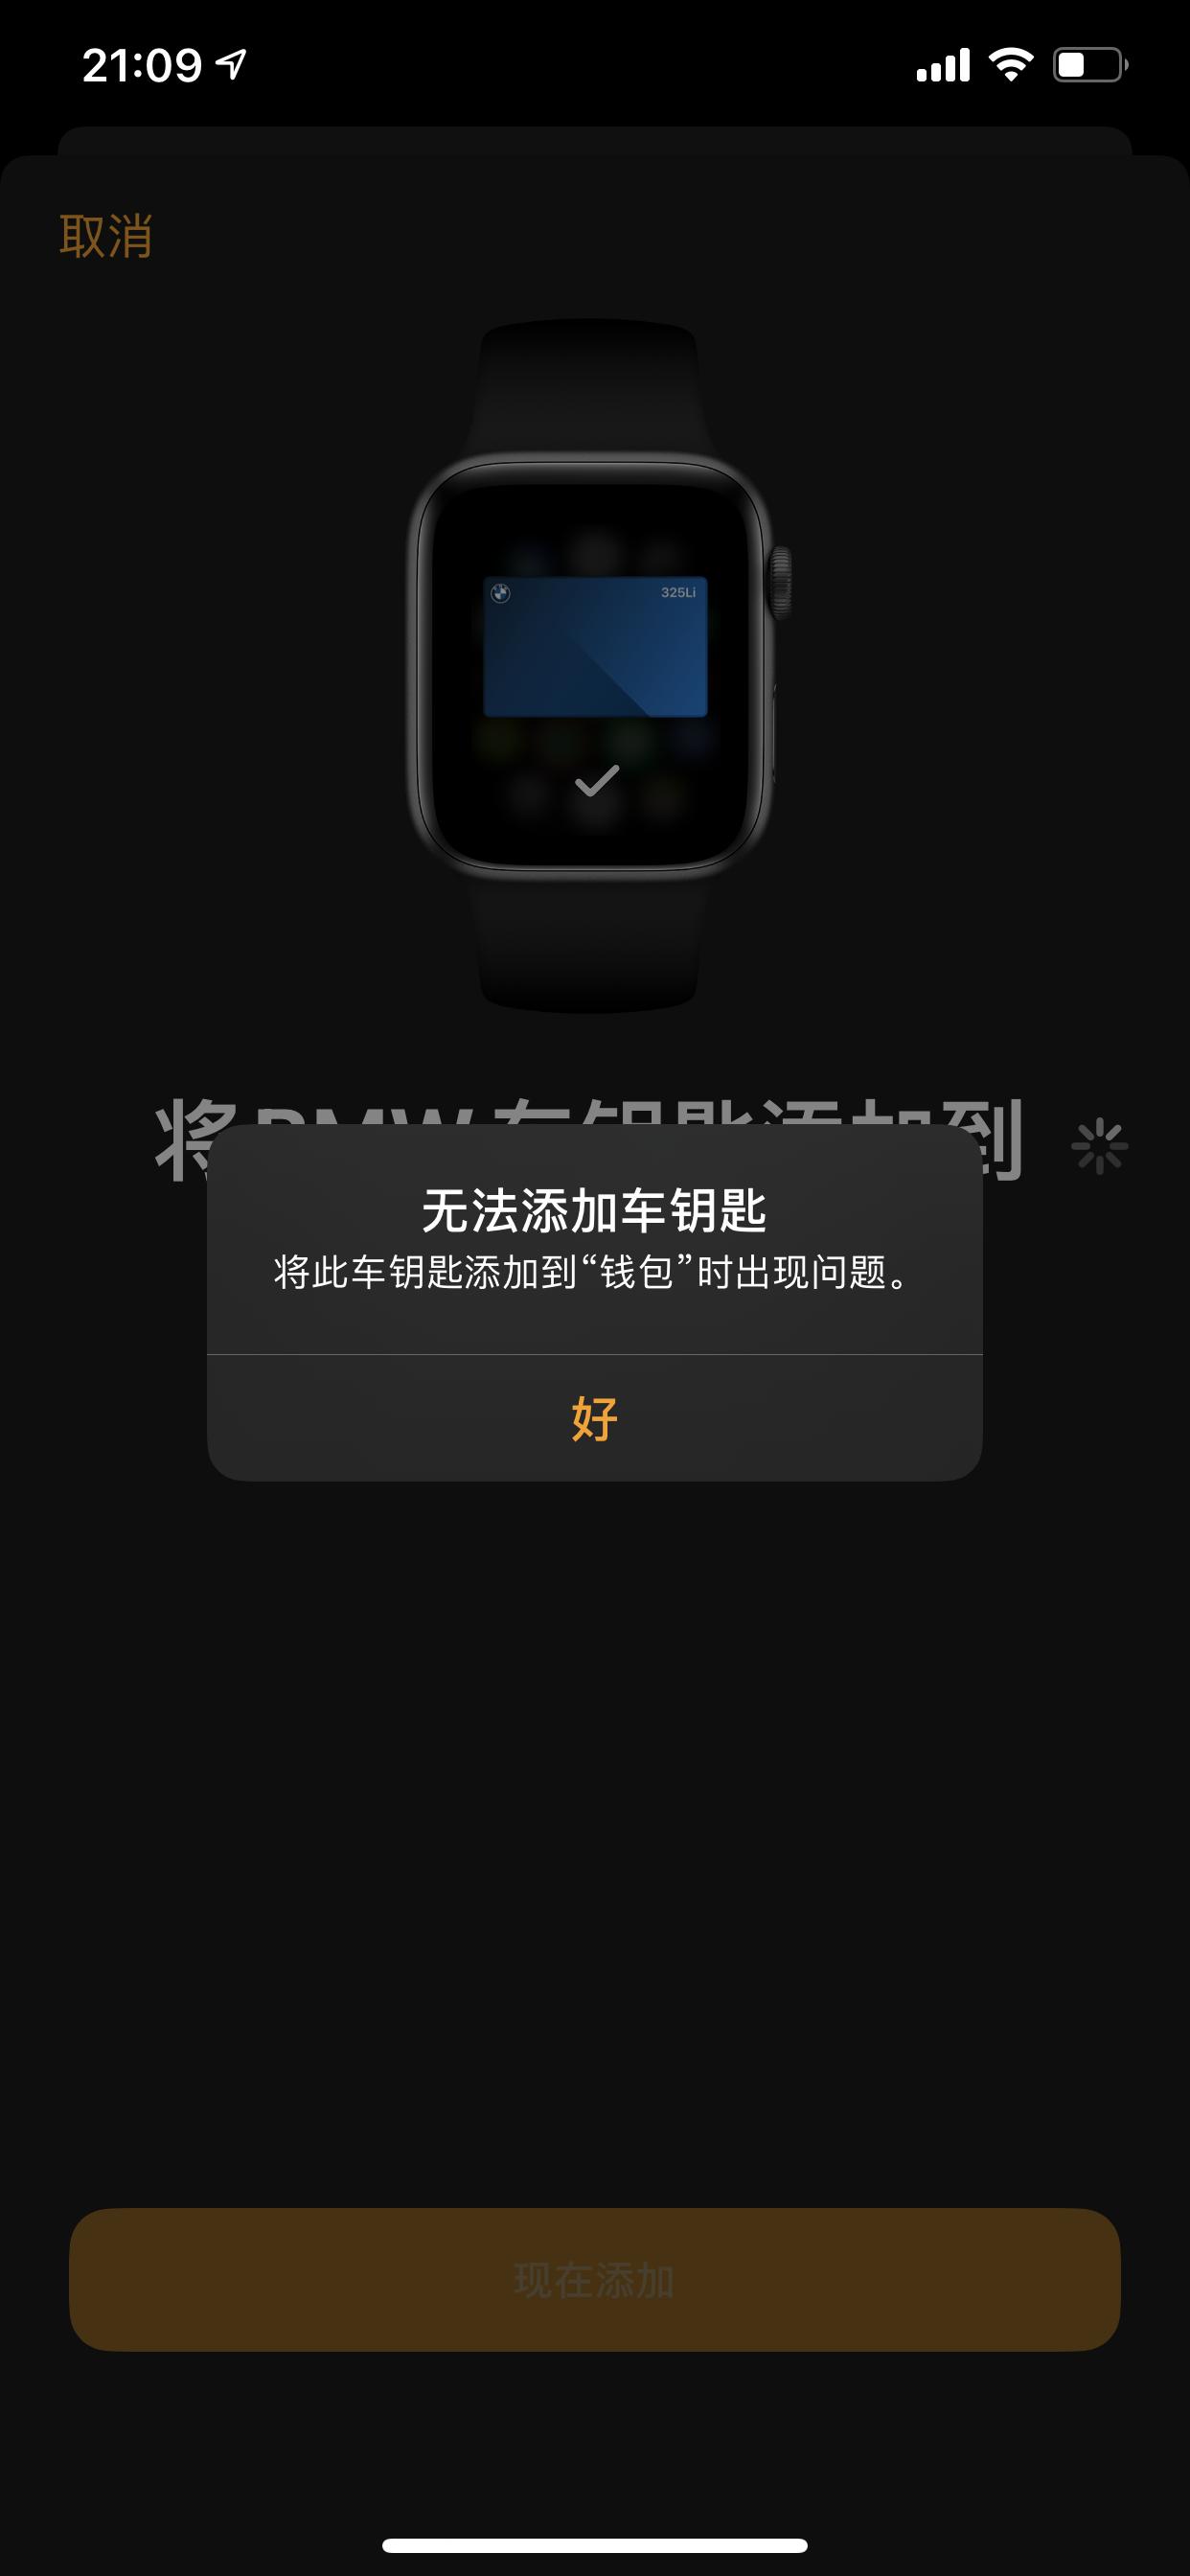 宝马3系 为何applepay数字钥匙没办法添加到手表上，试了好几次都不行